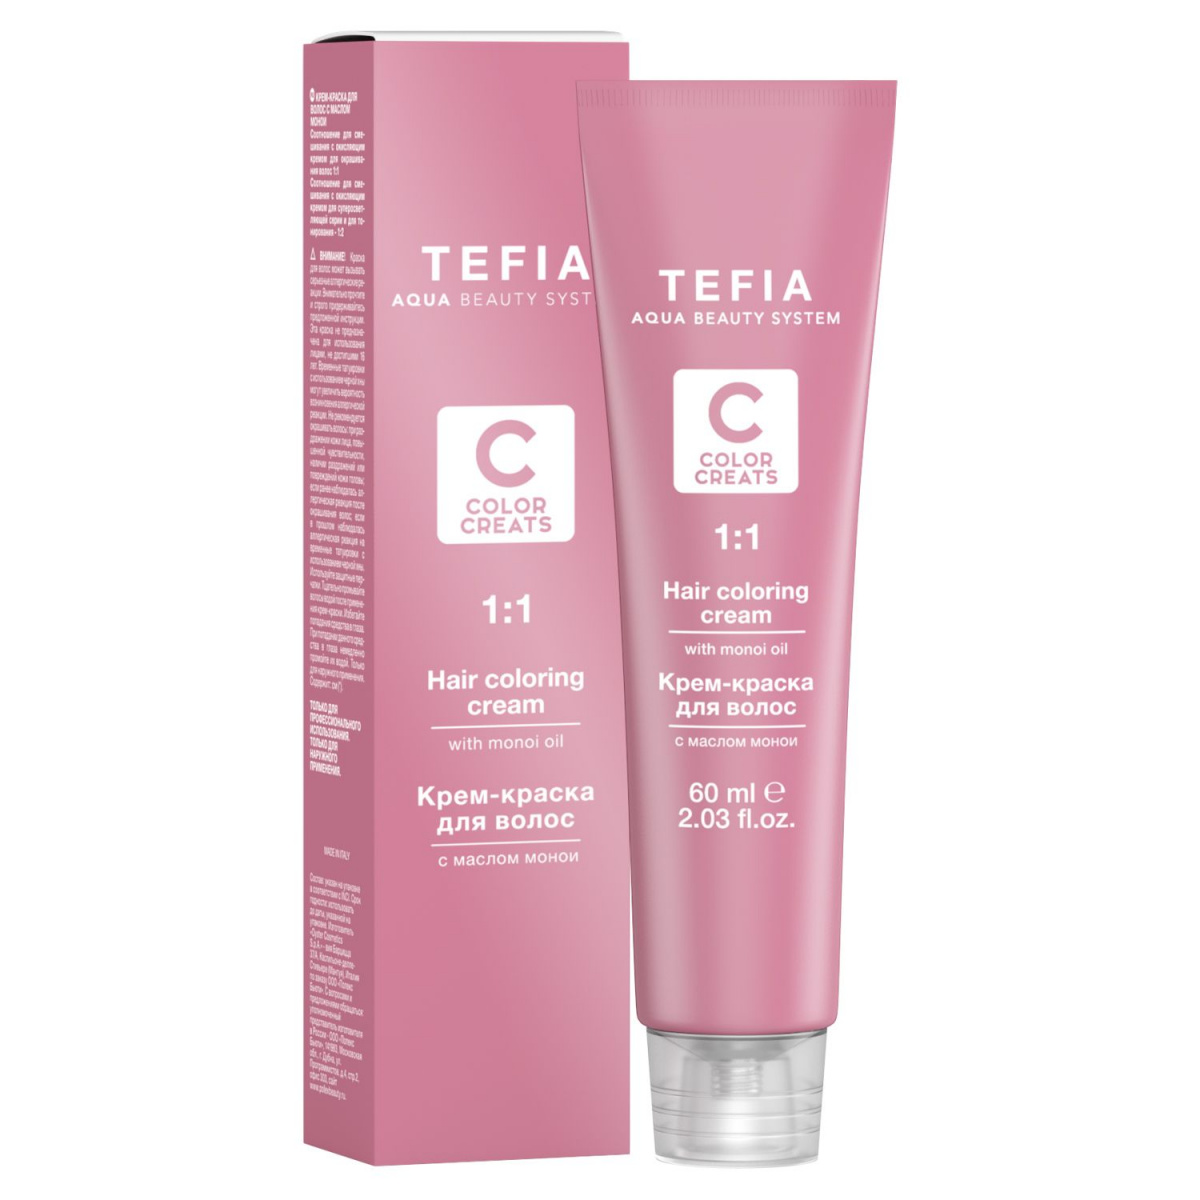 Tefia Color Creats - Крем-краска для волос с маслом монои 12.11 суперосветляющий экстра дымчатый 60 мл Tefia (Италия) купить по цене 387 руб.